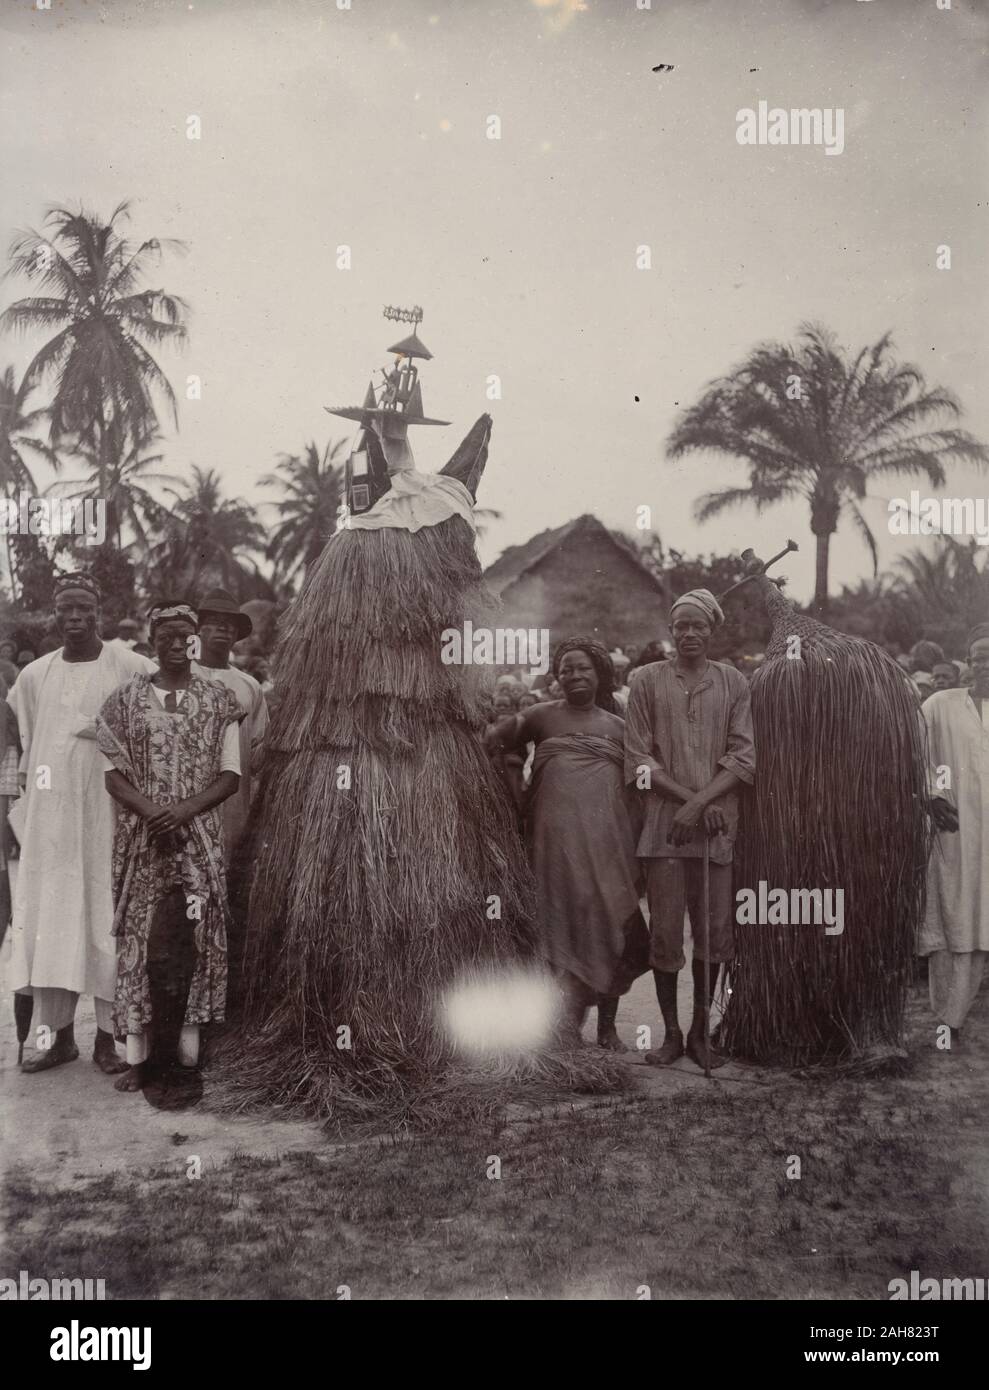 La Nigeria, la didascalia recita: "Juju uomini nei loro costumi". Due juju practioners vestito in costumi tassled progettato per coprire i loro corpi interi, [c.1920s]. 2000/098/1/57. Foto Stock